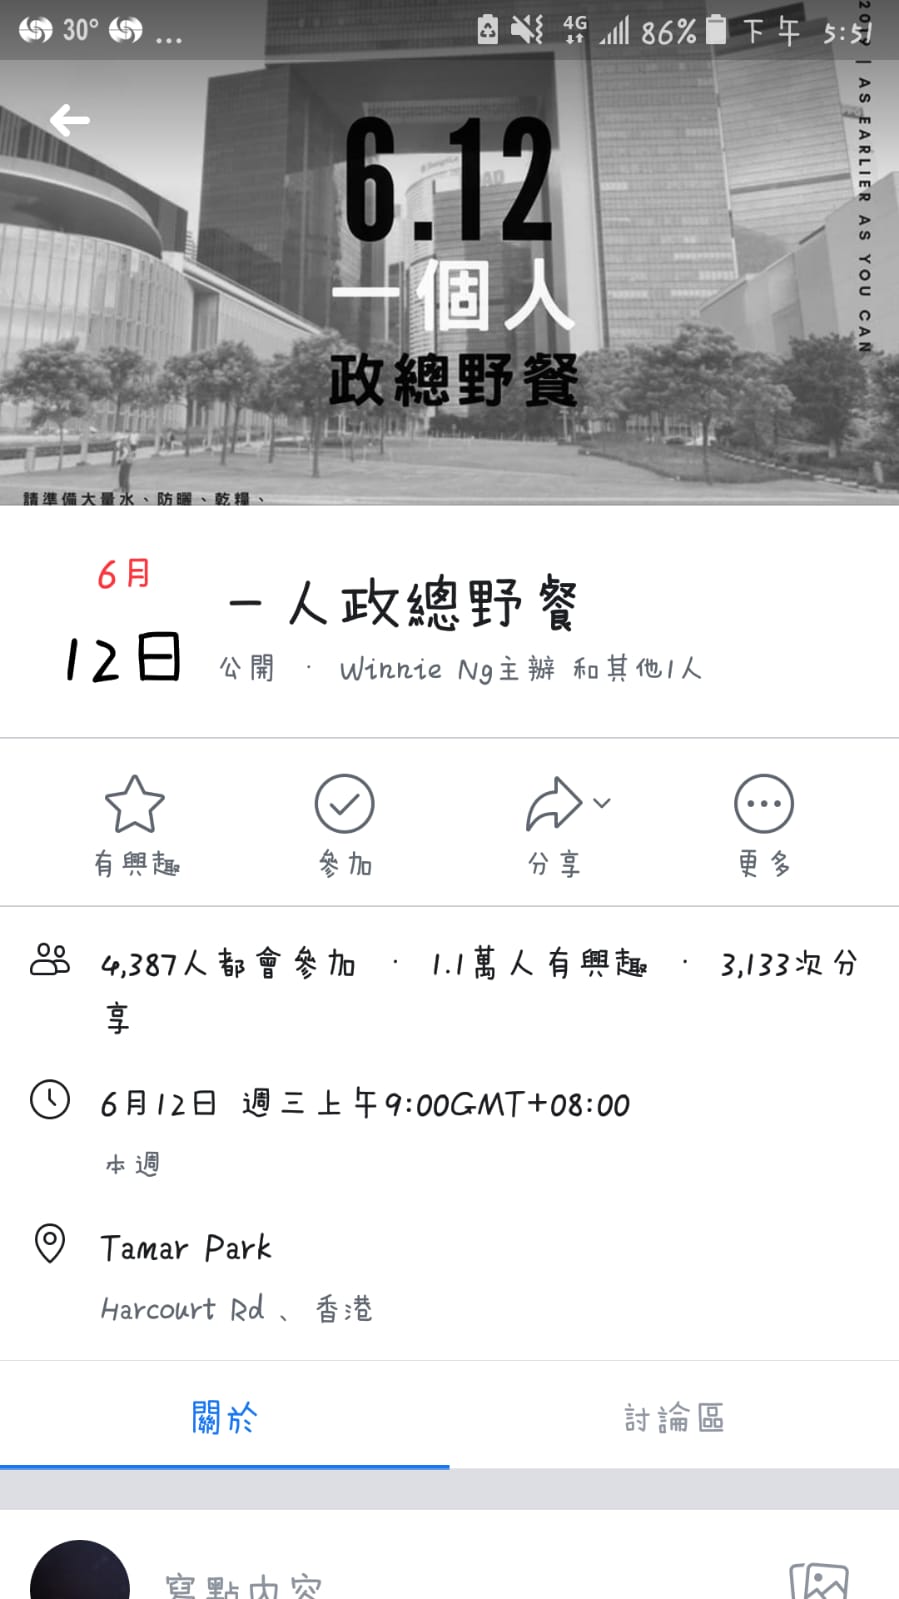 2019年6月12日 反送中罷工罷課 (2).jpg